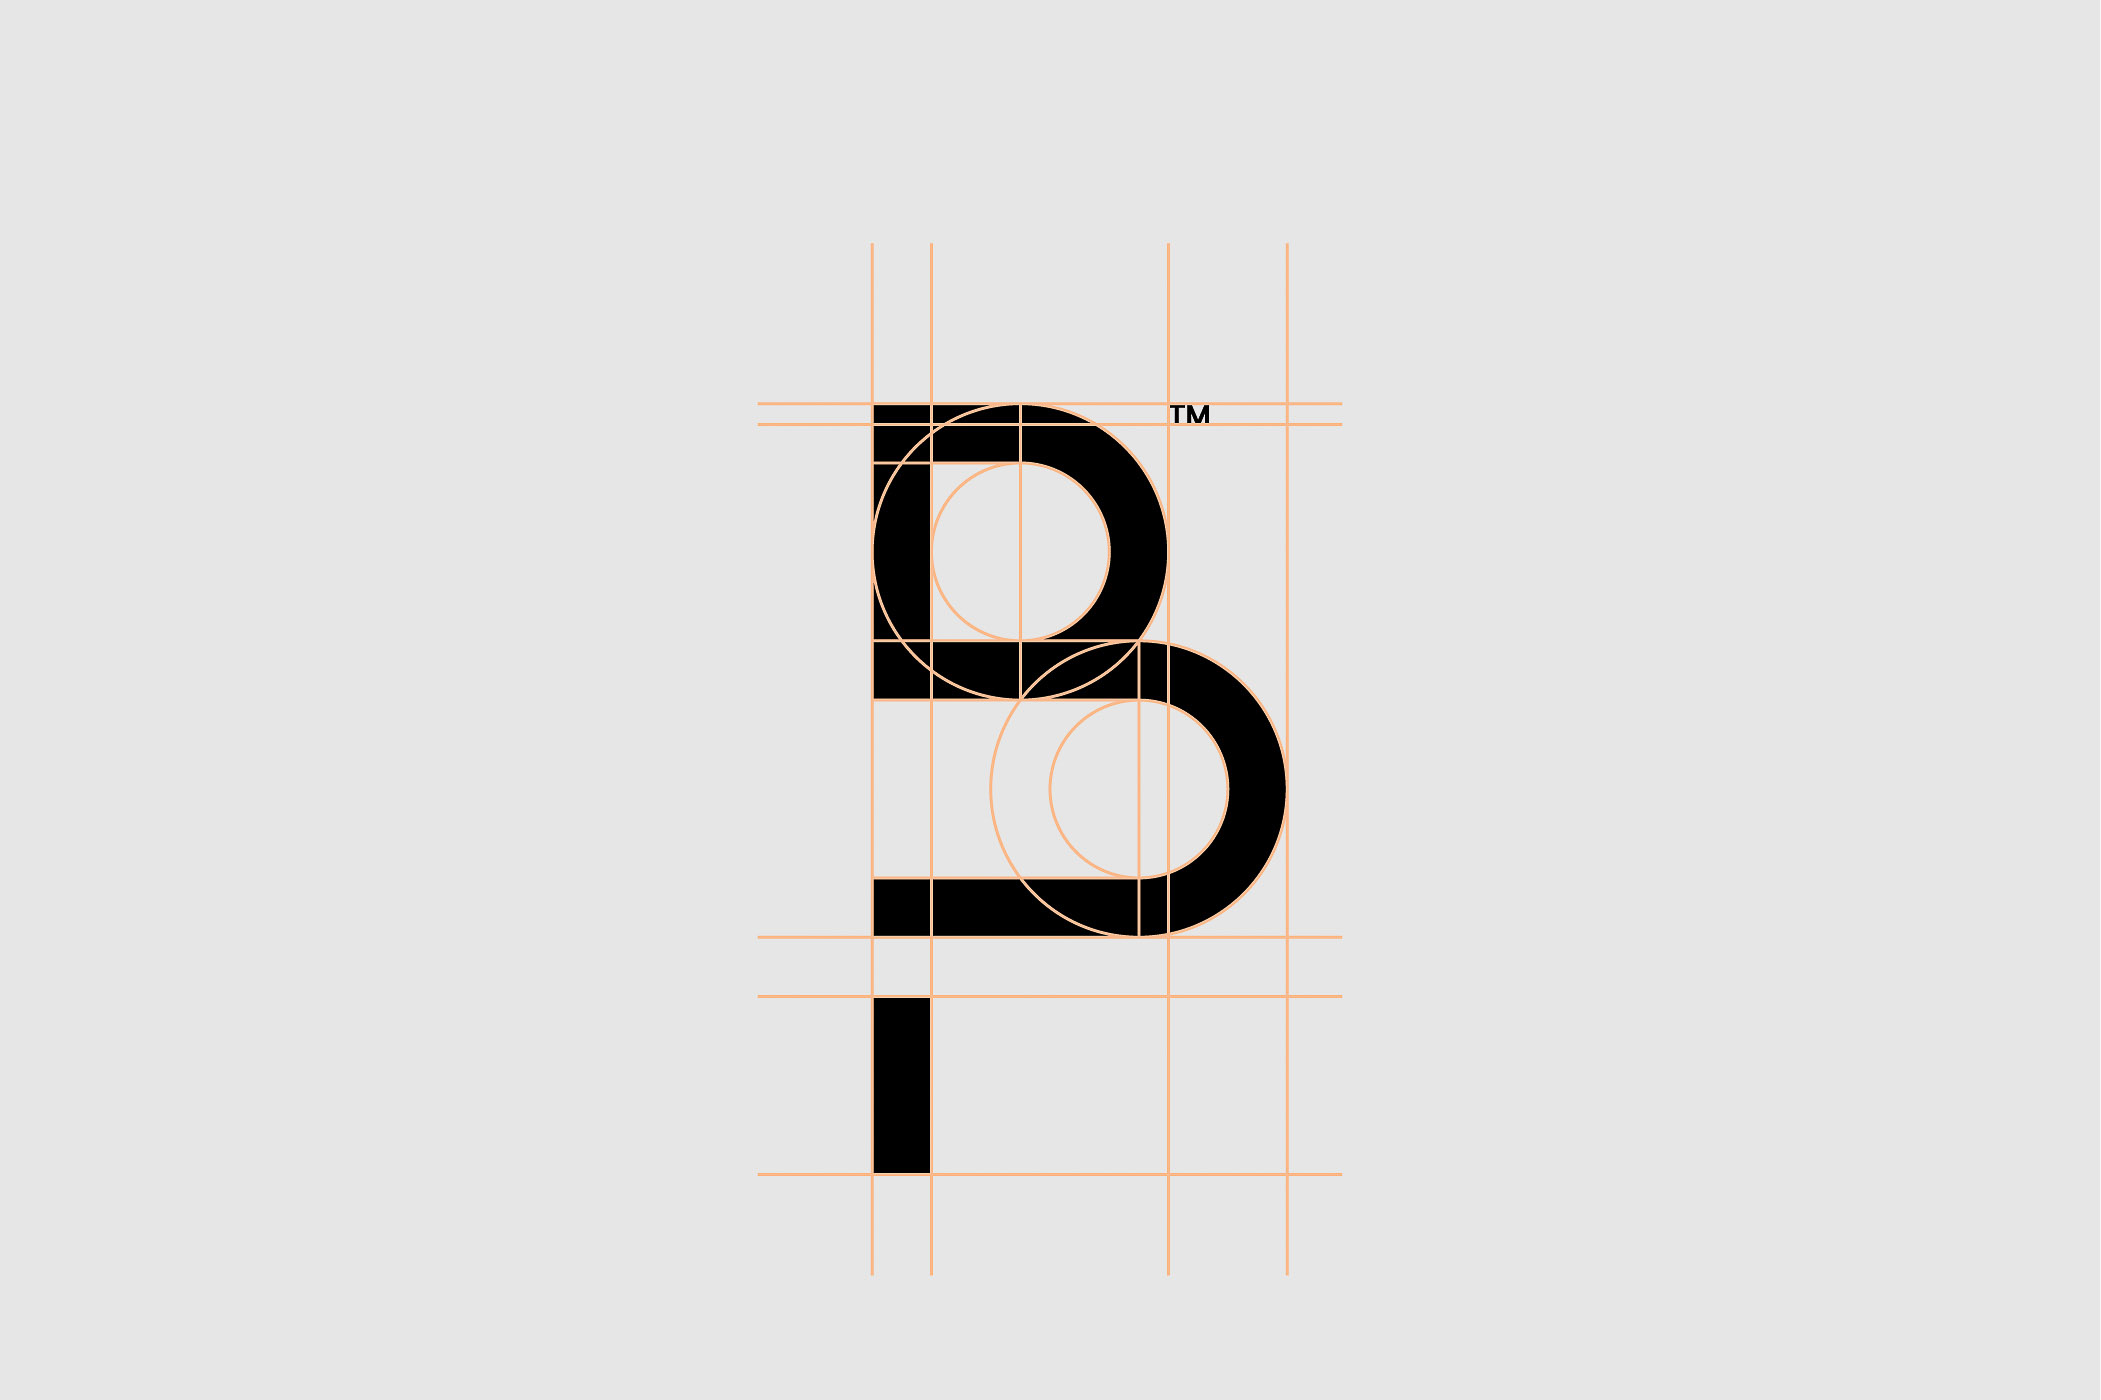 단색 배경에 가이드라인을 따라 나타나는 Brand Purist의 BP 로고 마크 디자인.